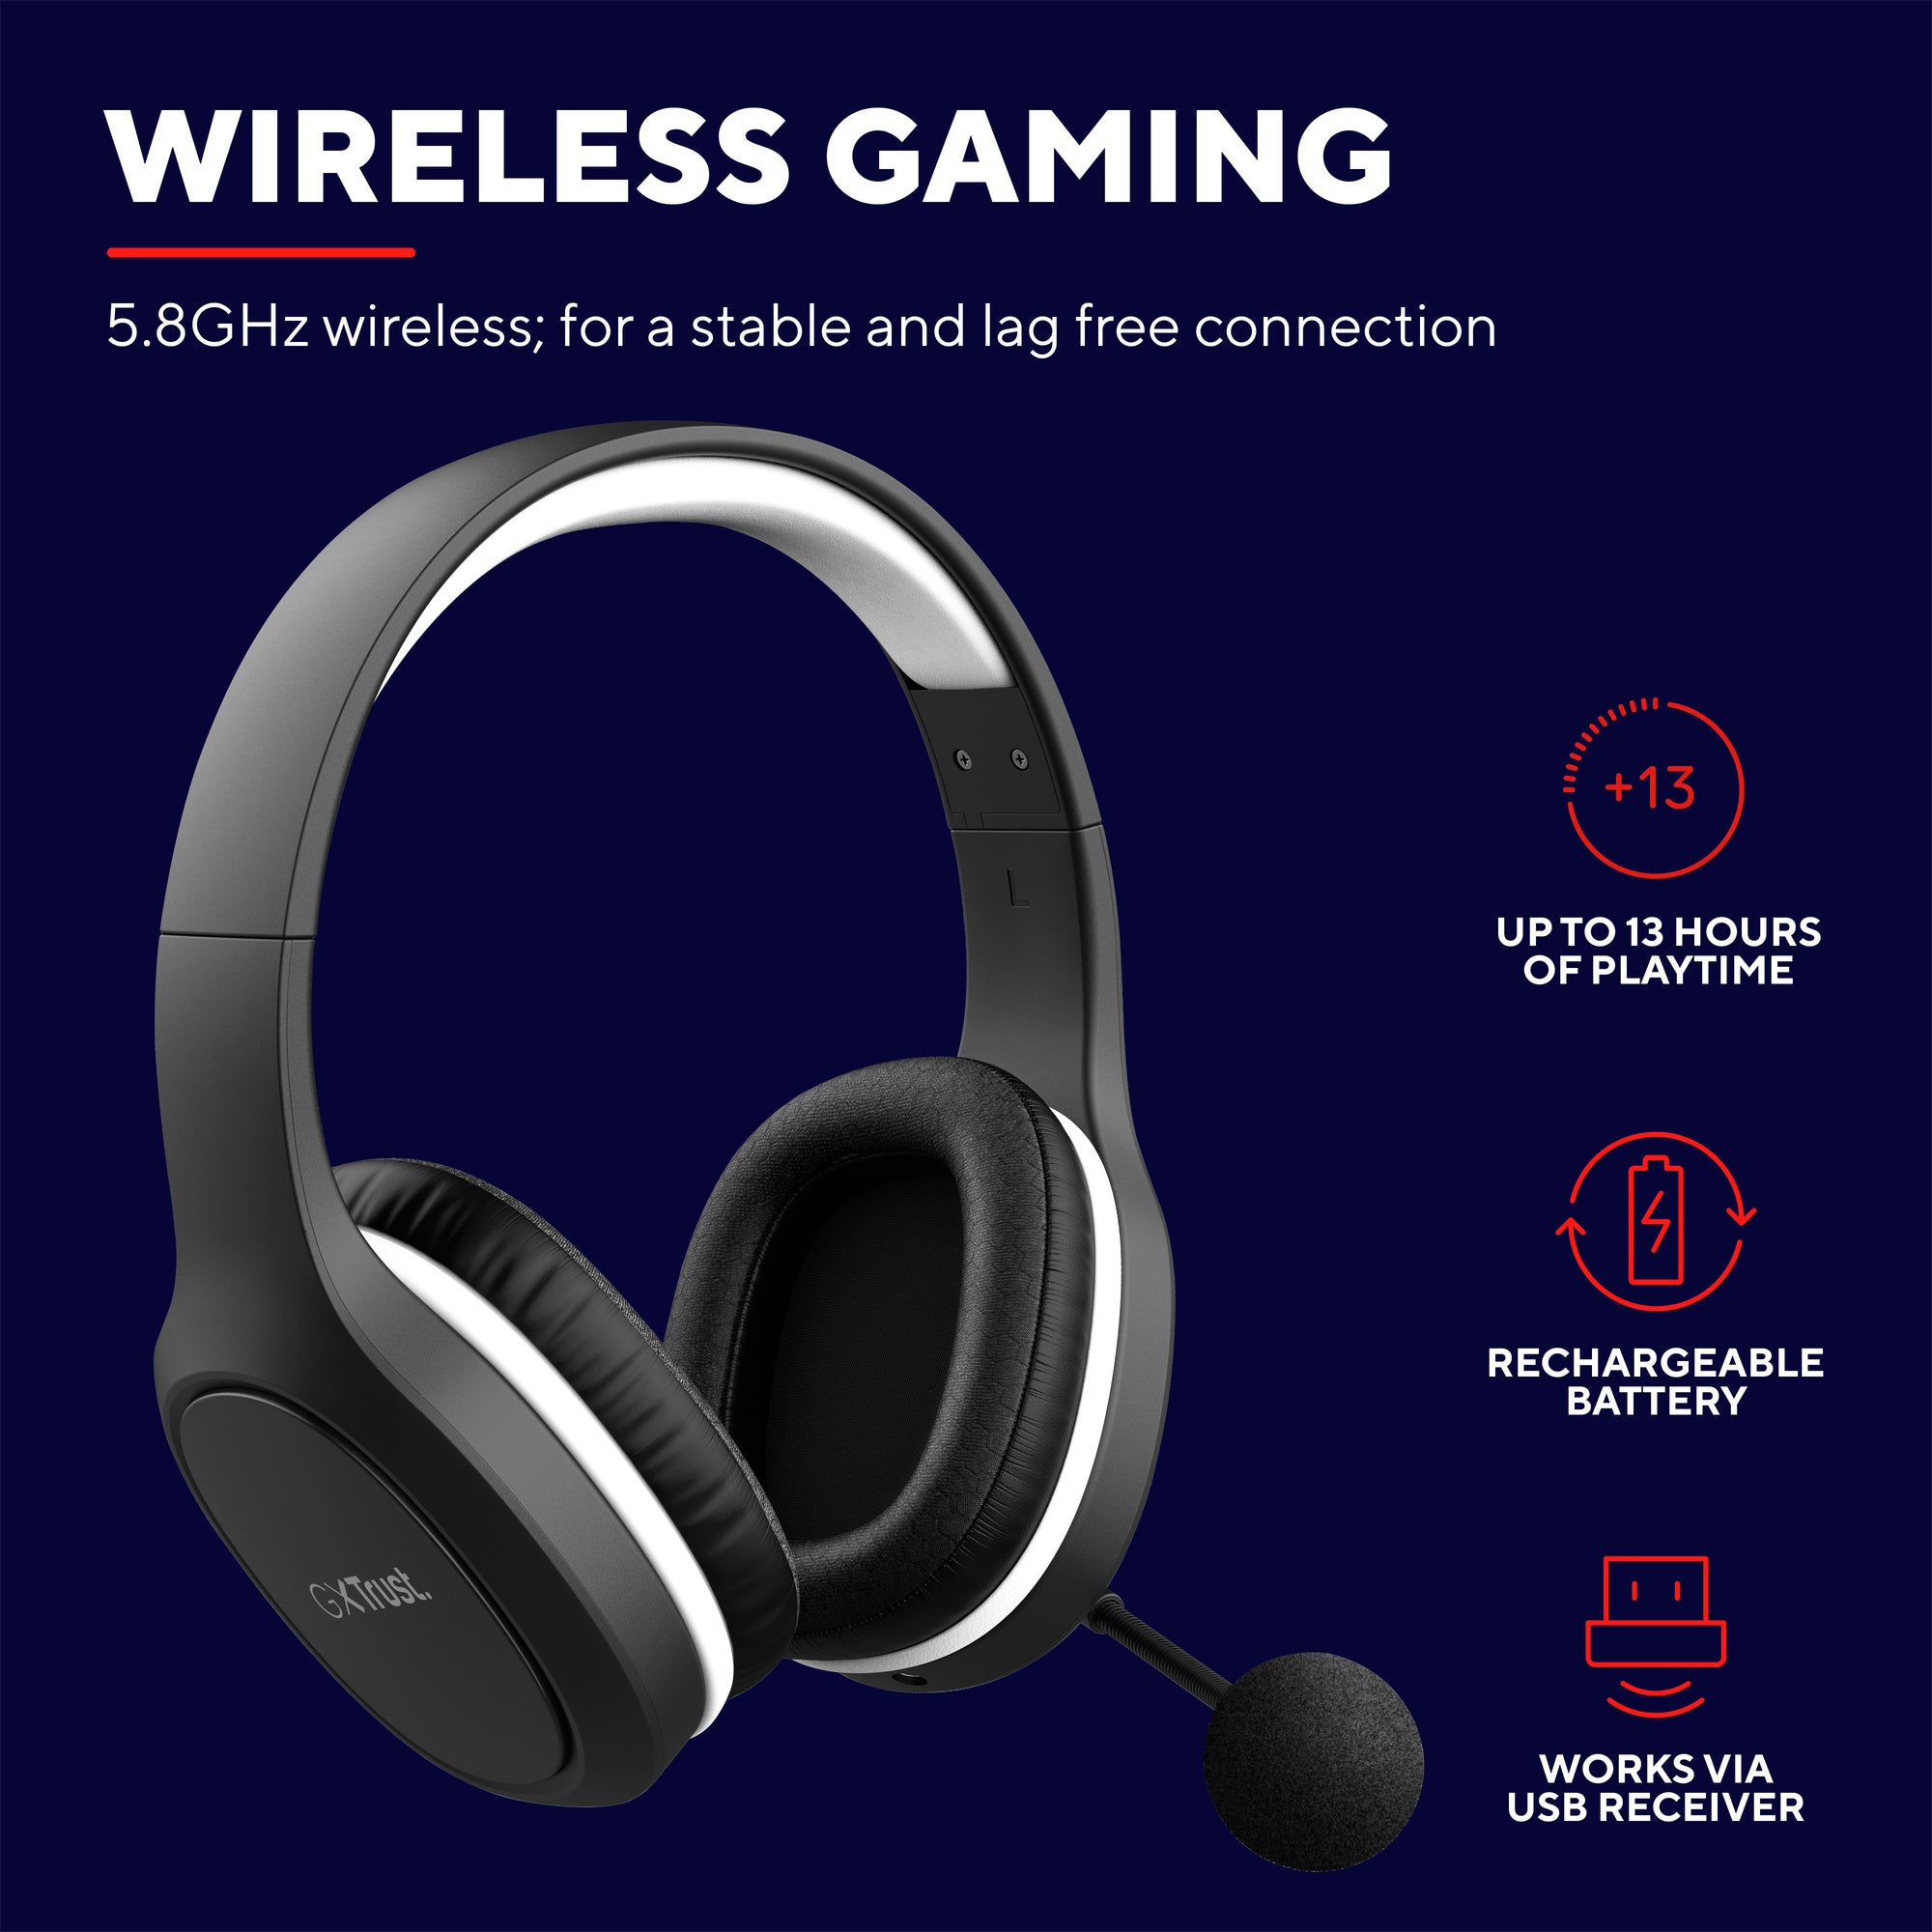 Miljövänligt Gaming headsett Trust GXT 391 Thian Wireless